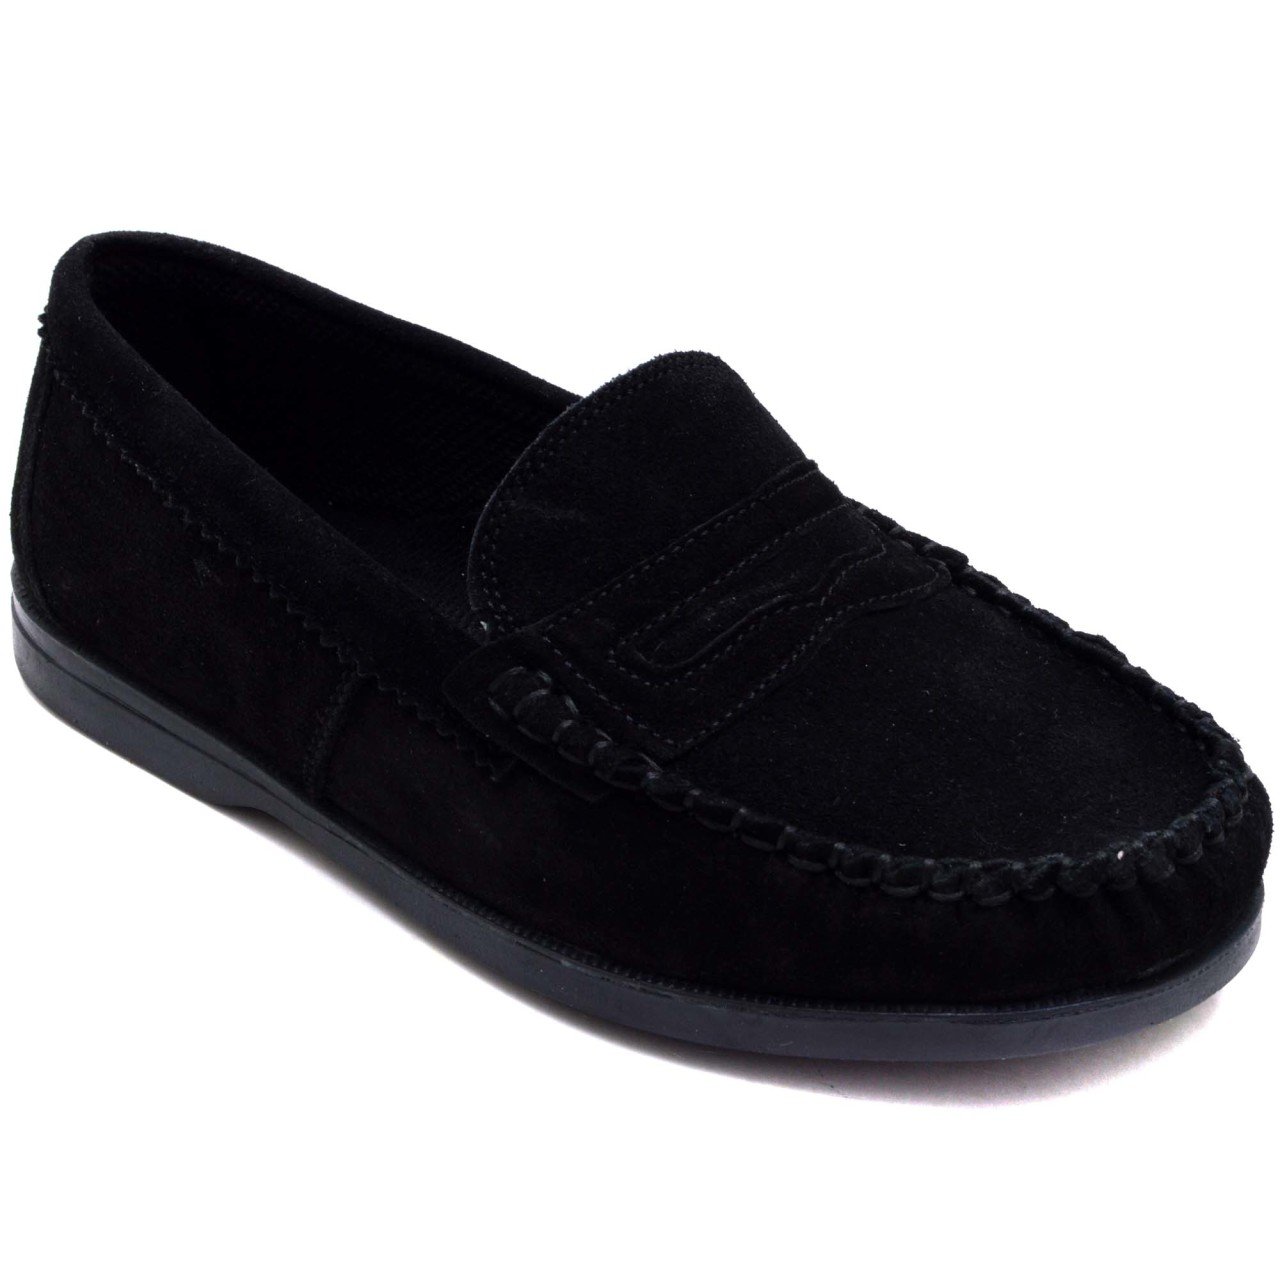 Y&Y 306 Filet Okul Ayakkabısı - Siyah (Deri)